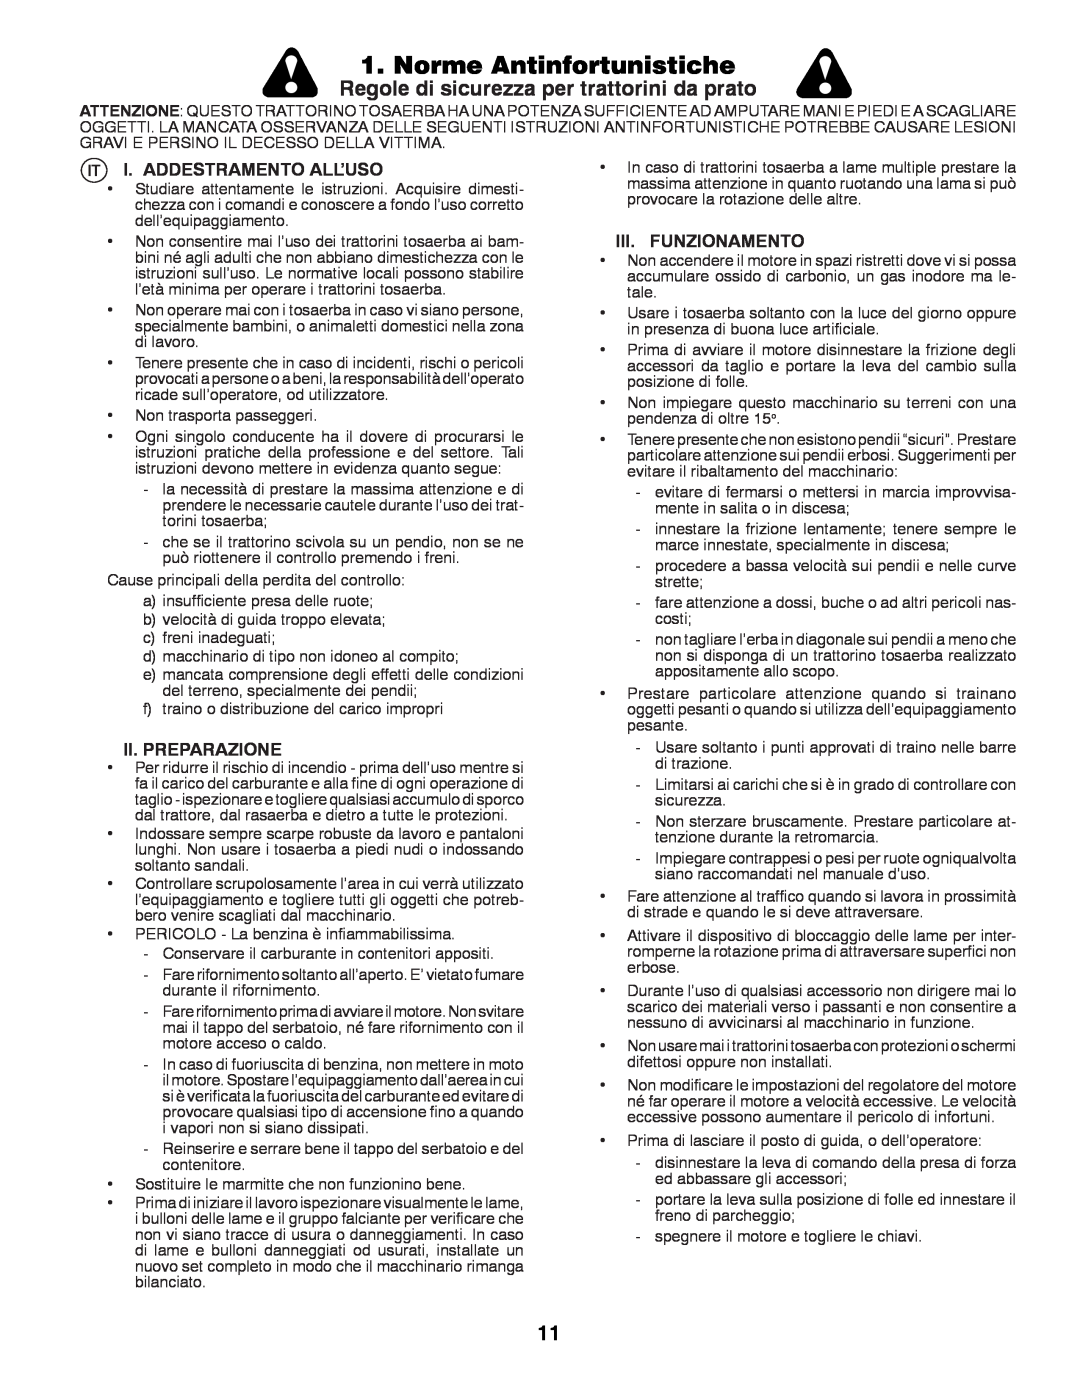 Partner Tech P145107H Norme Antinfortunistiche, Regole di sicurezza per trattorini da prato, I. Addestramento All’Uso 